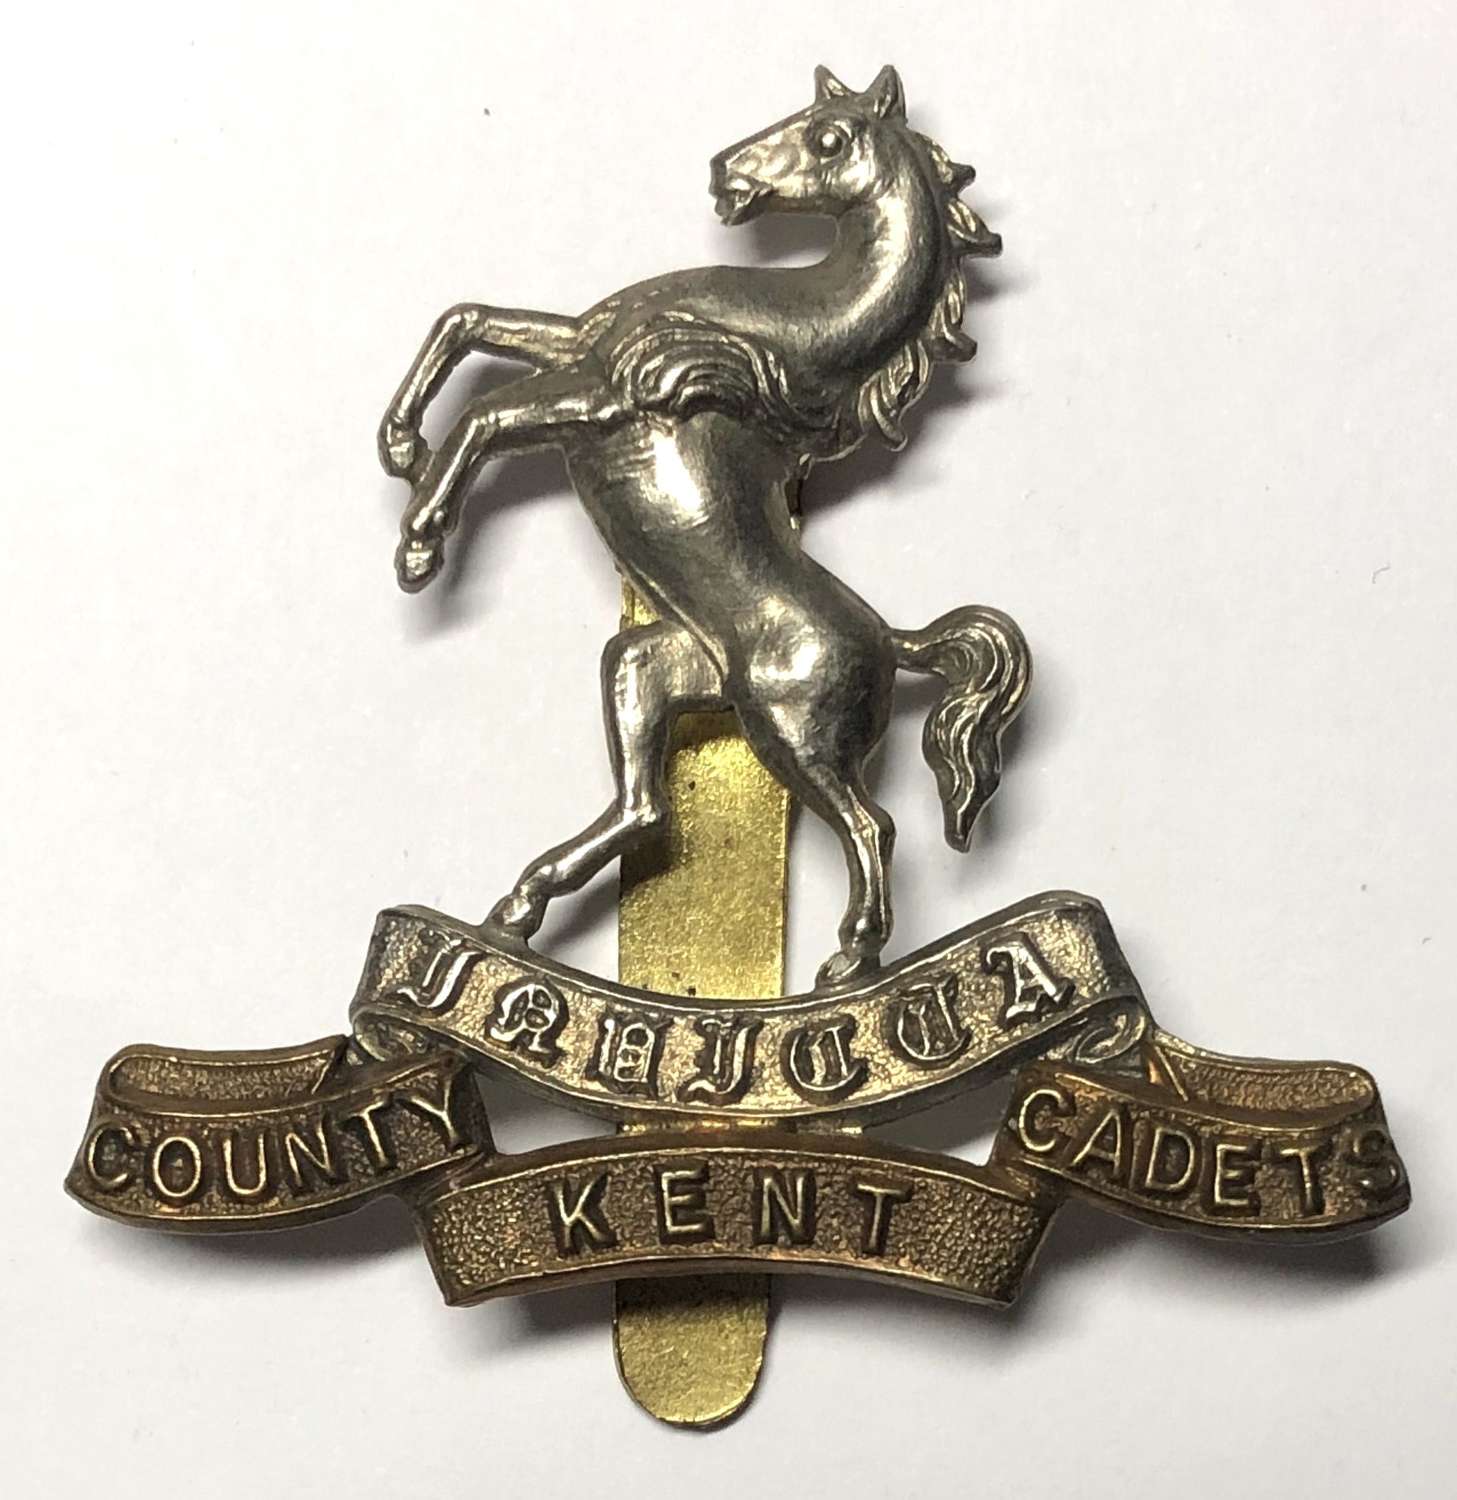 Kent County Cadets cap badge